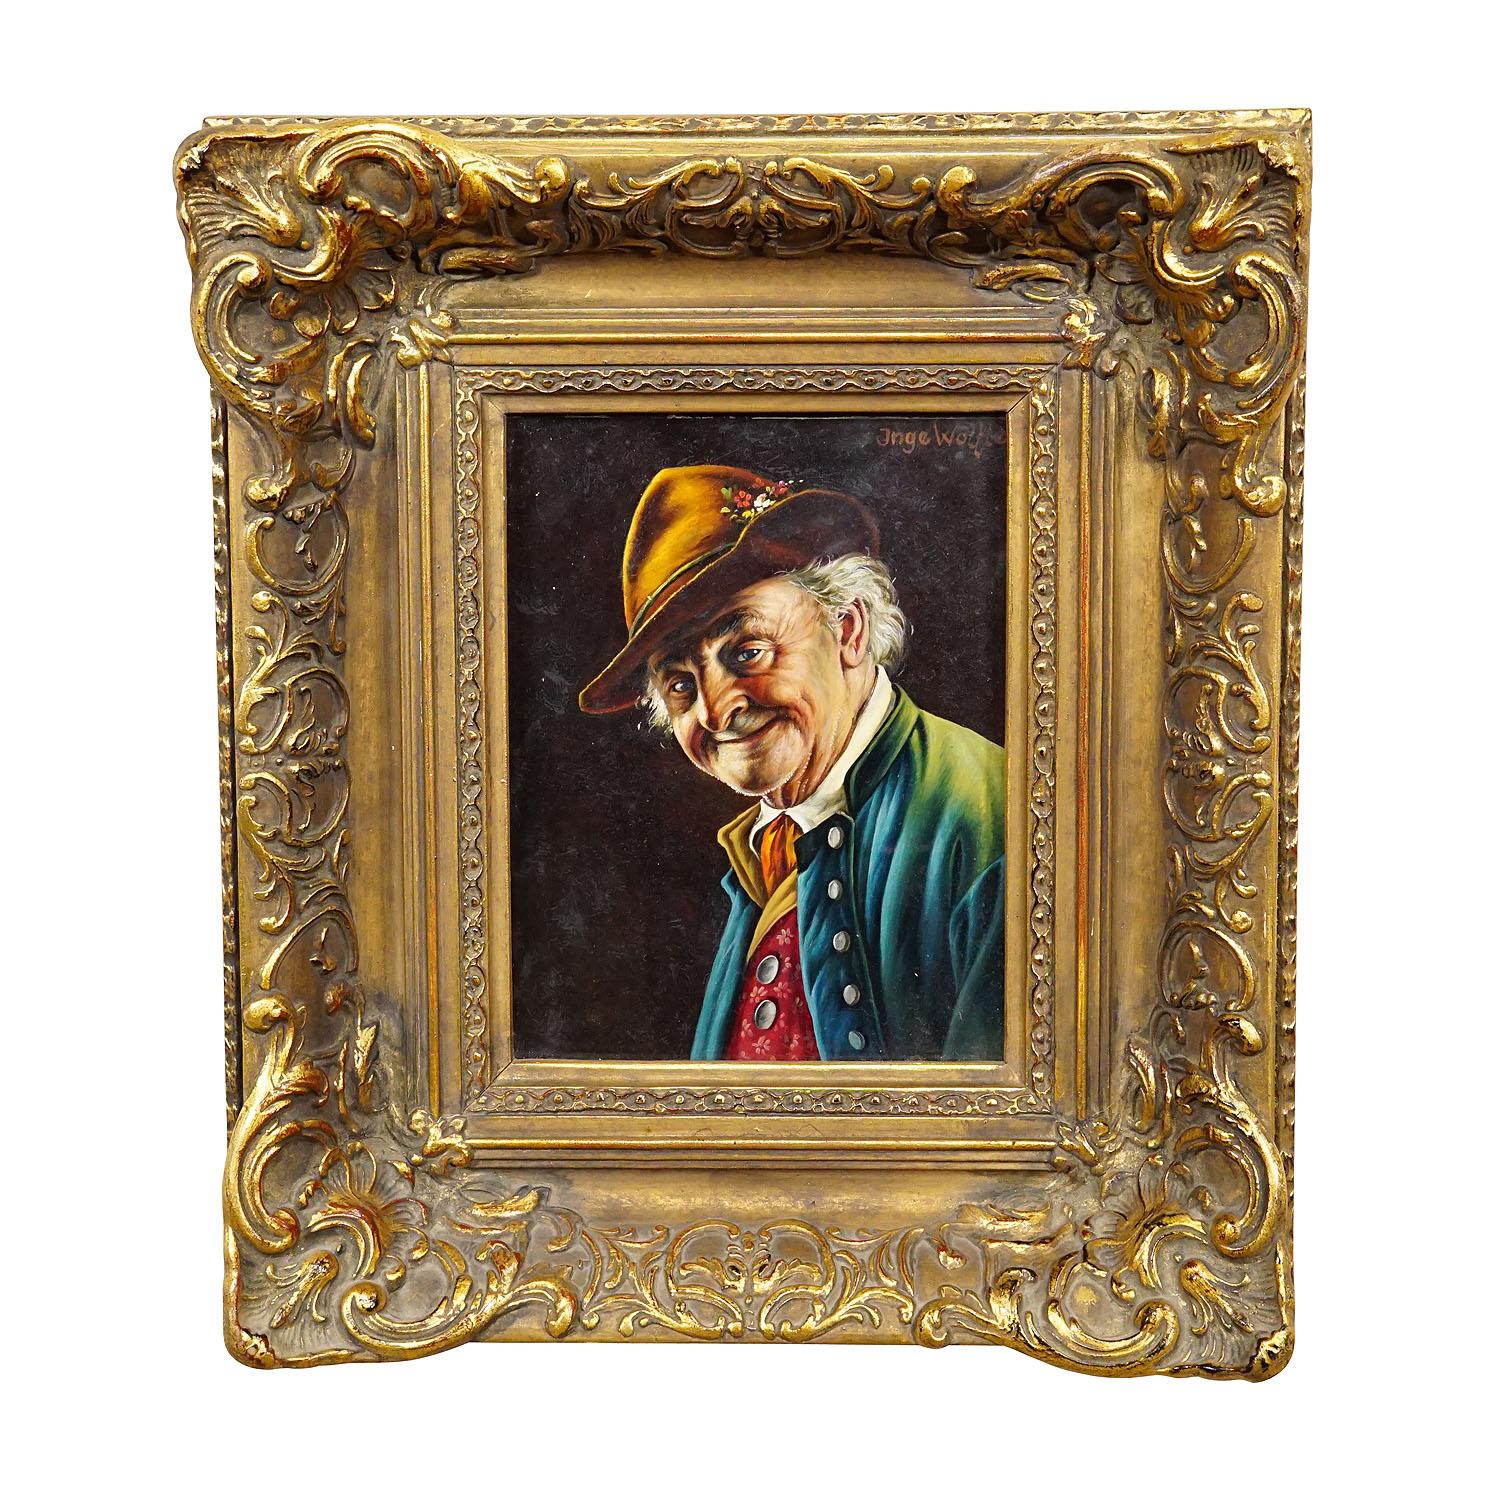 Inge Woelfle - Portrait d'un homme populaire bavarois, huile sur Wood

Une peinture à l'huile colorée représentant un homme bavarois folklorique dans sa robe du dimanche. Peint sur bois avec des couleurs pastel vers les années 1950. Encadrement en